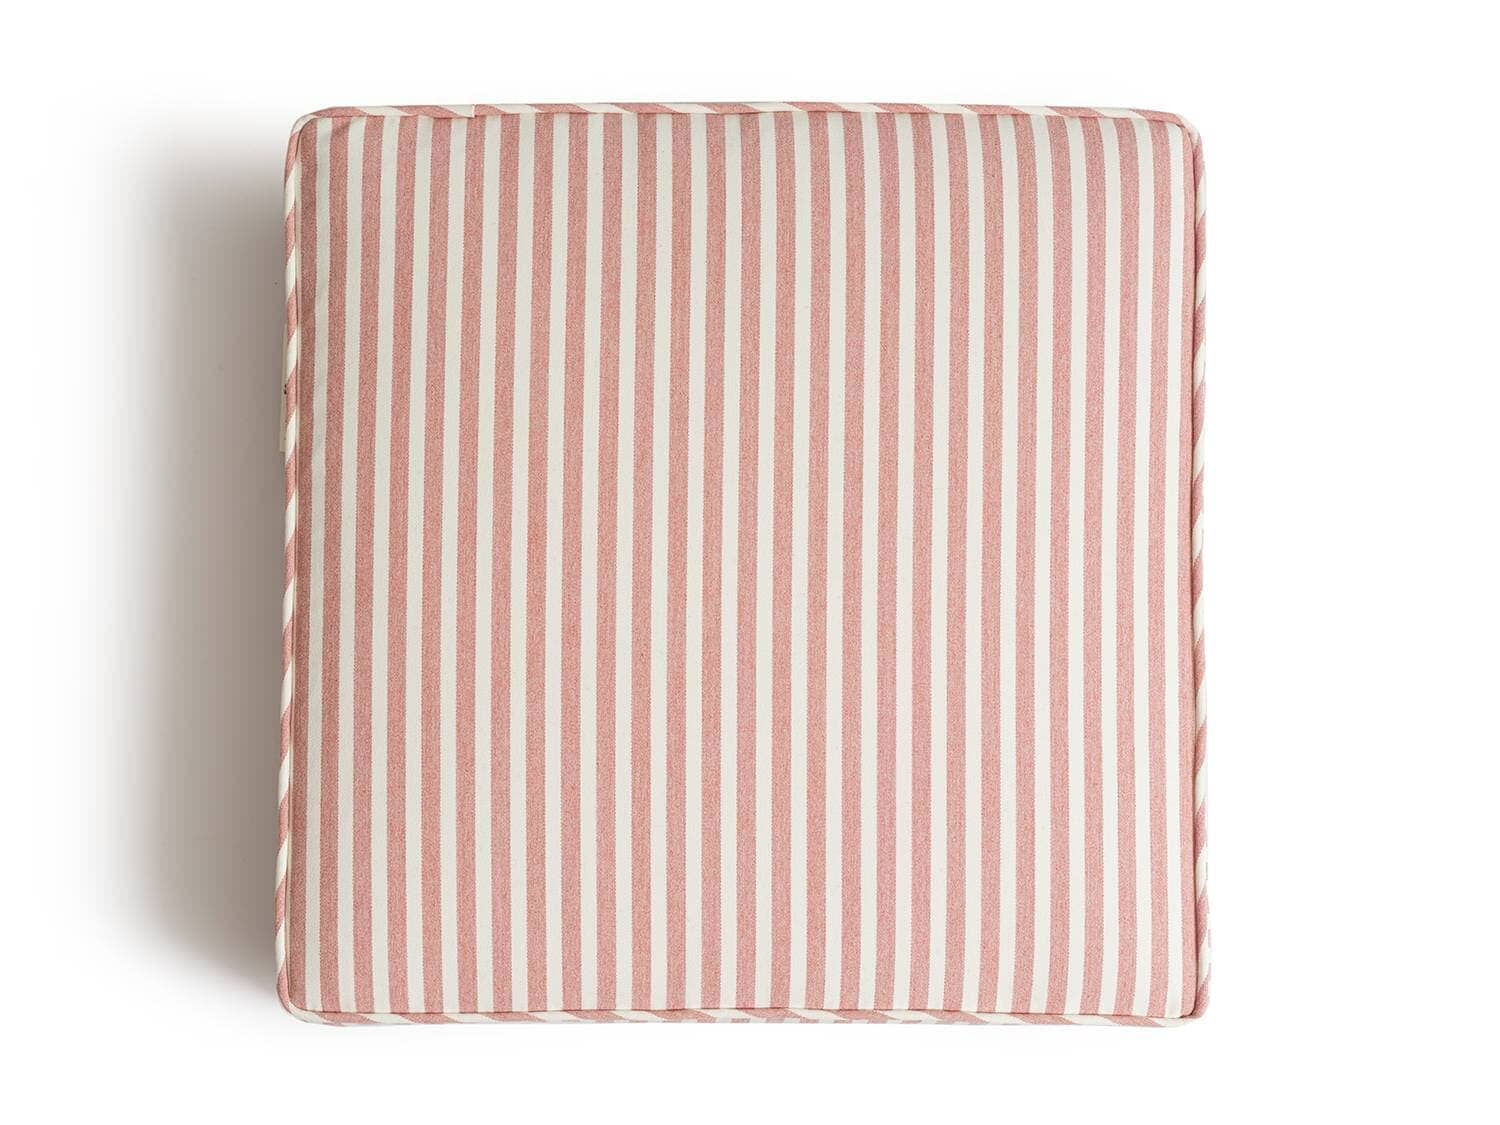 studio image of lauren's pink stripe seat pillow